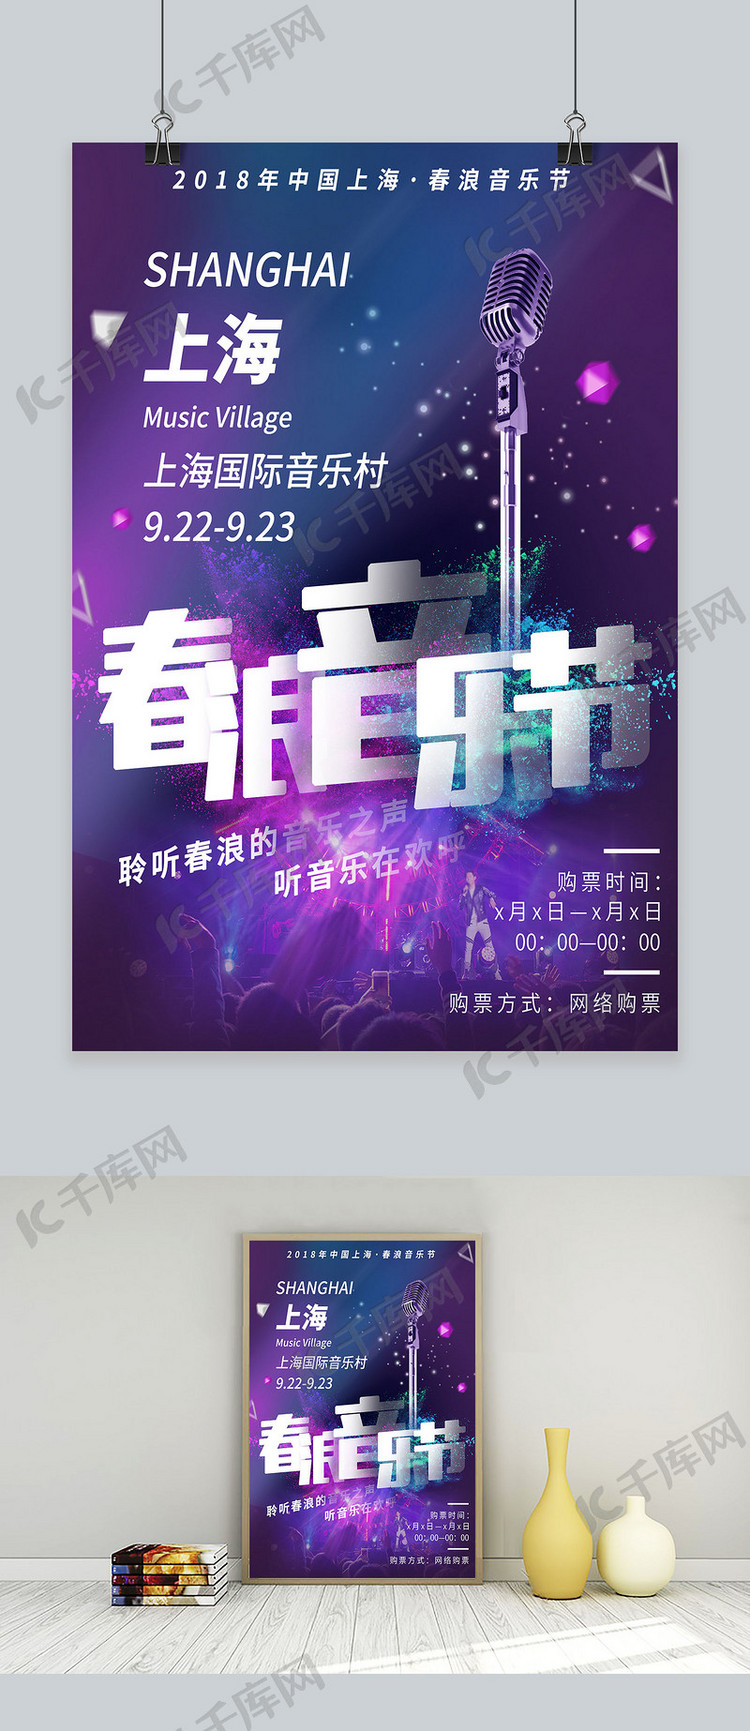 紫色大气炫酷欧美风上海春浪音乐节宣传海报